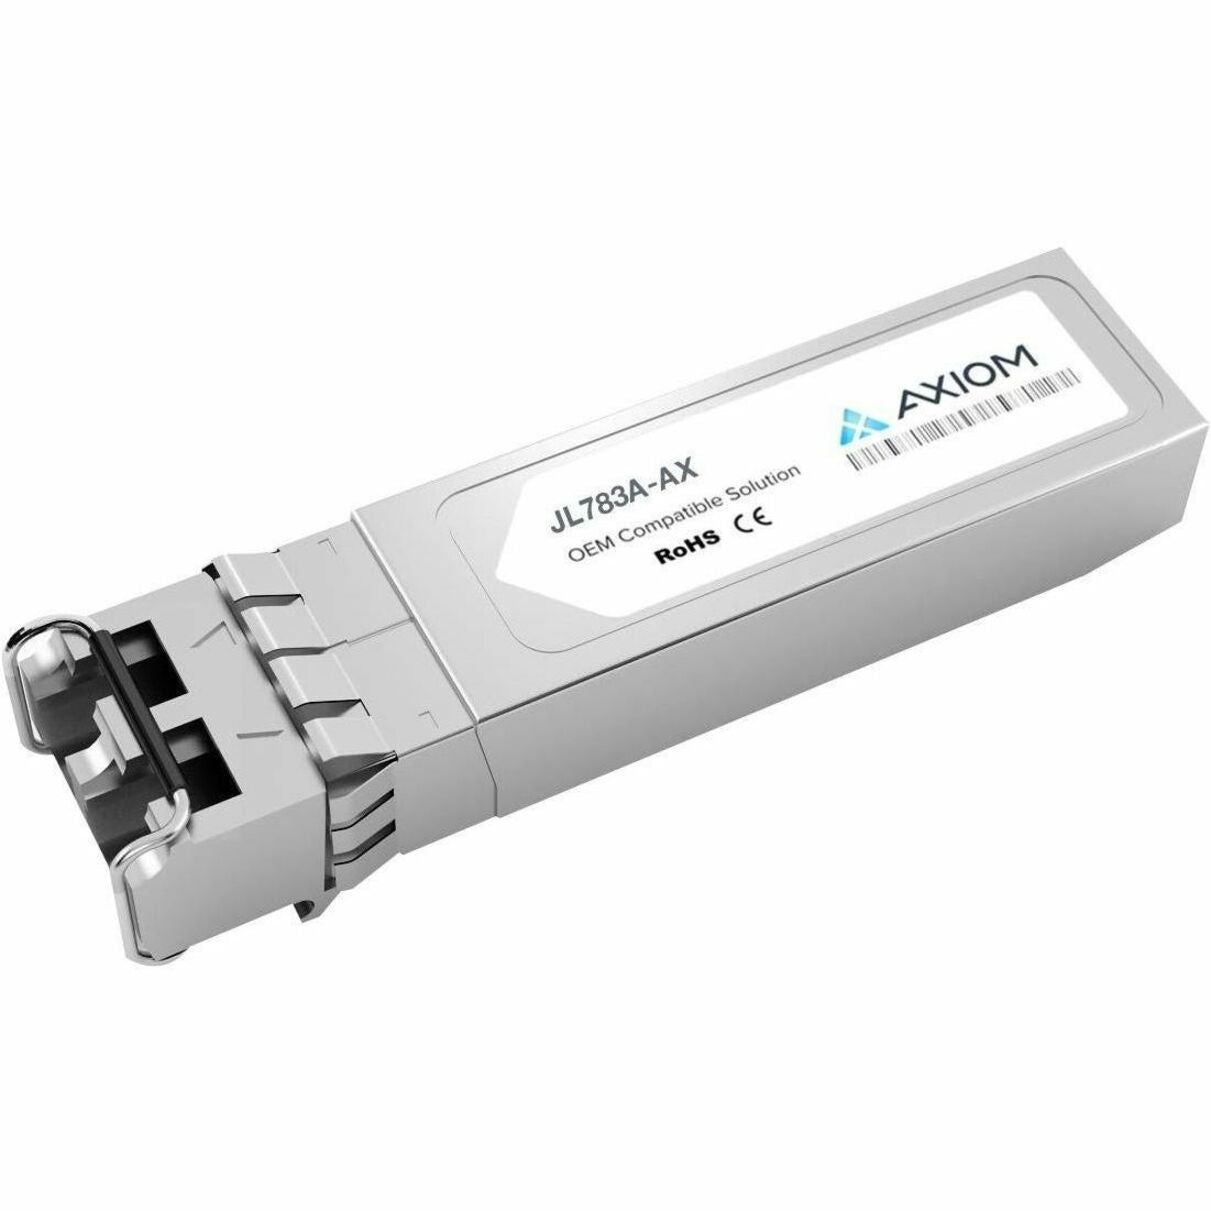 Axiom JL783A-AX 10GBASE-LR Industrielle Temp SFP+ Transceiver für Aruba lebenslange Garantie RoHS-zertifiziert